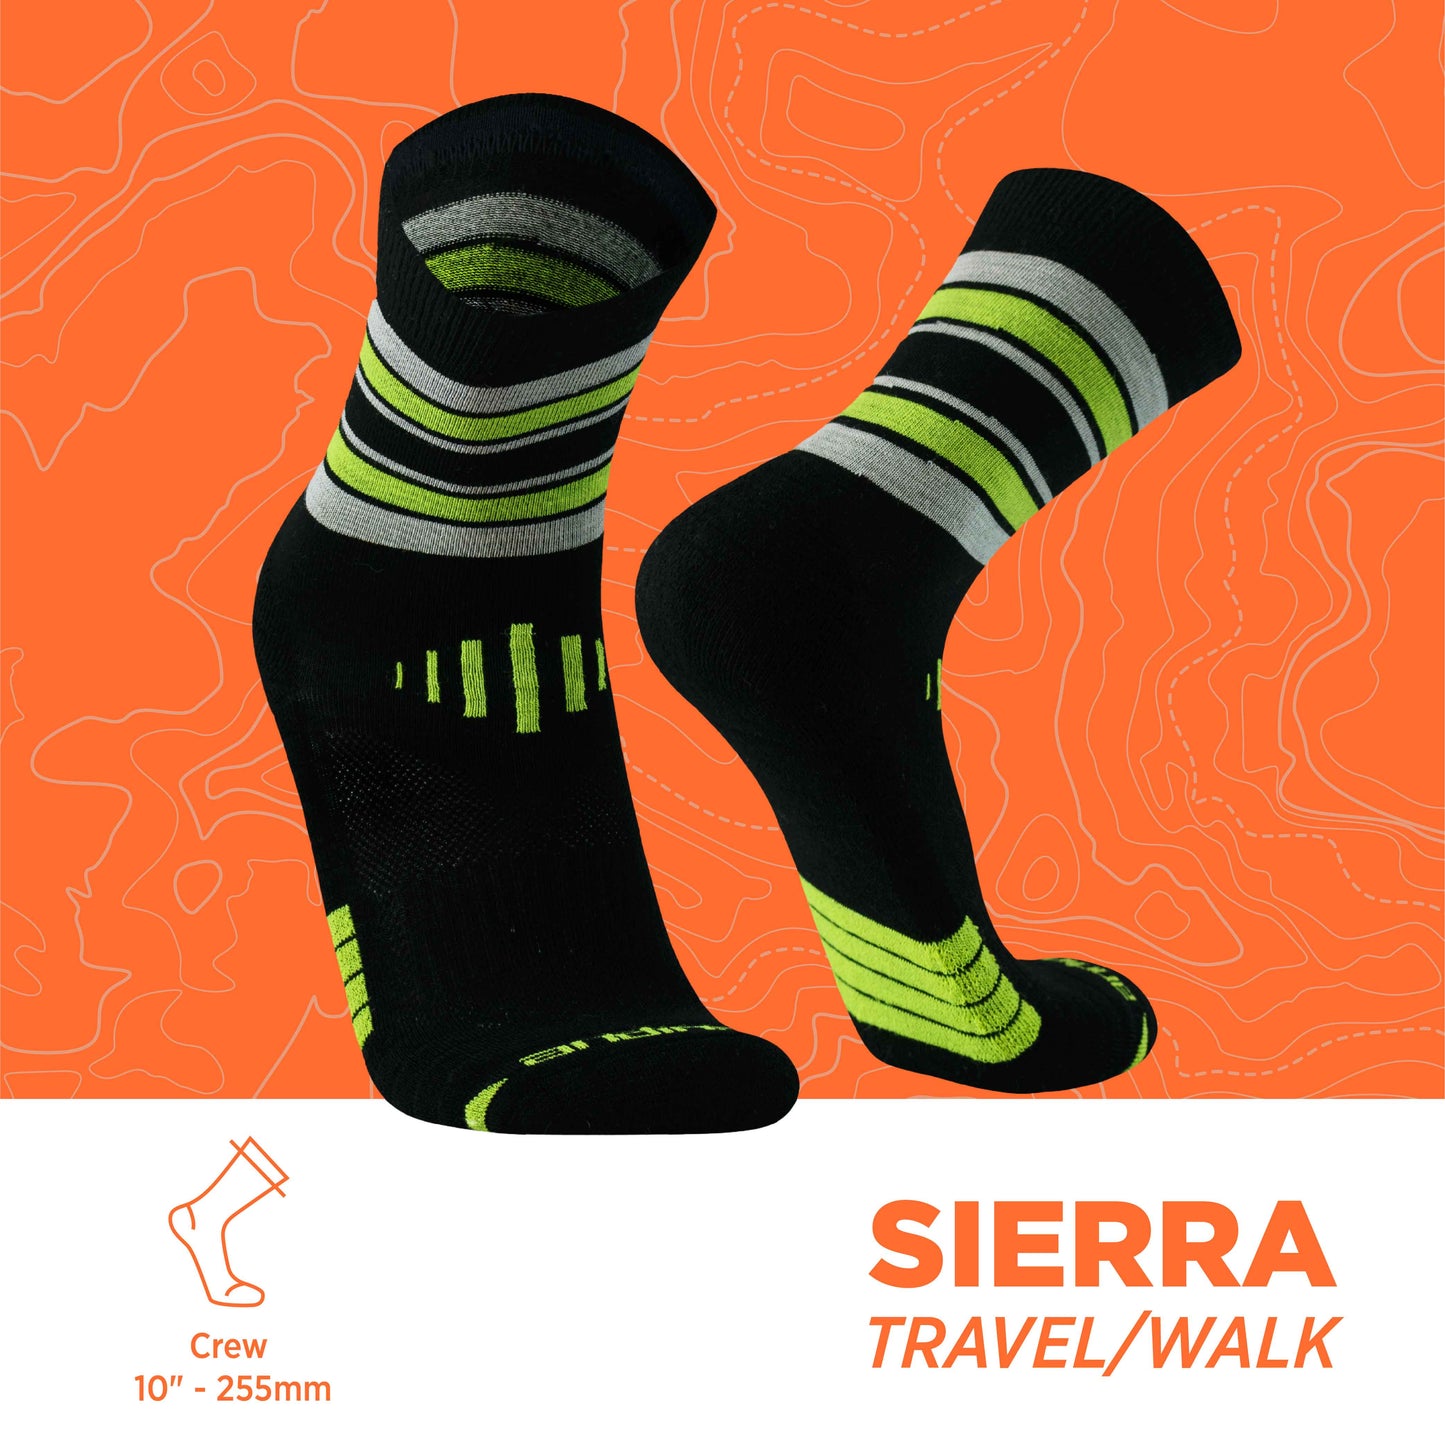 Sierra | Viajar y caminar 